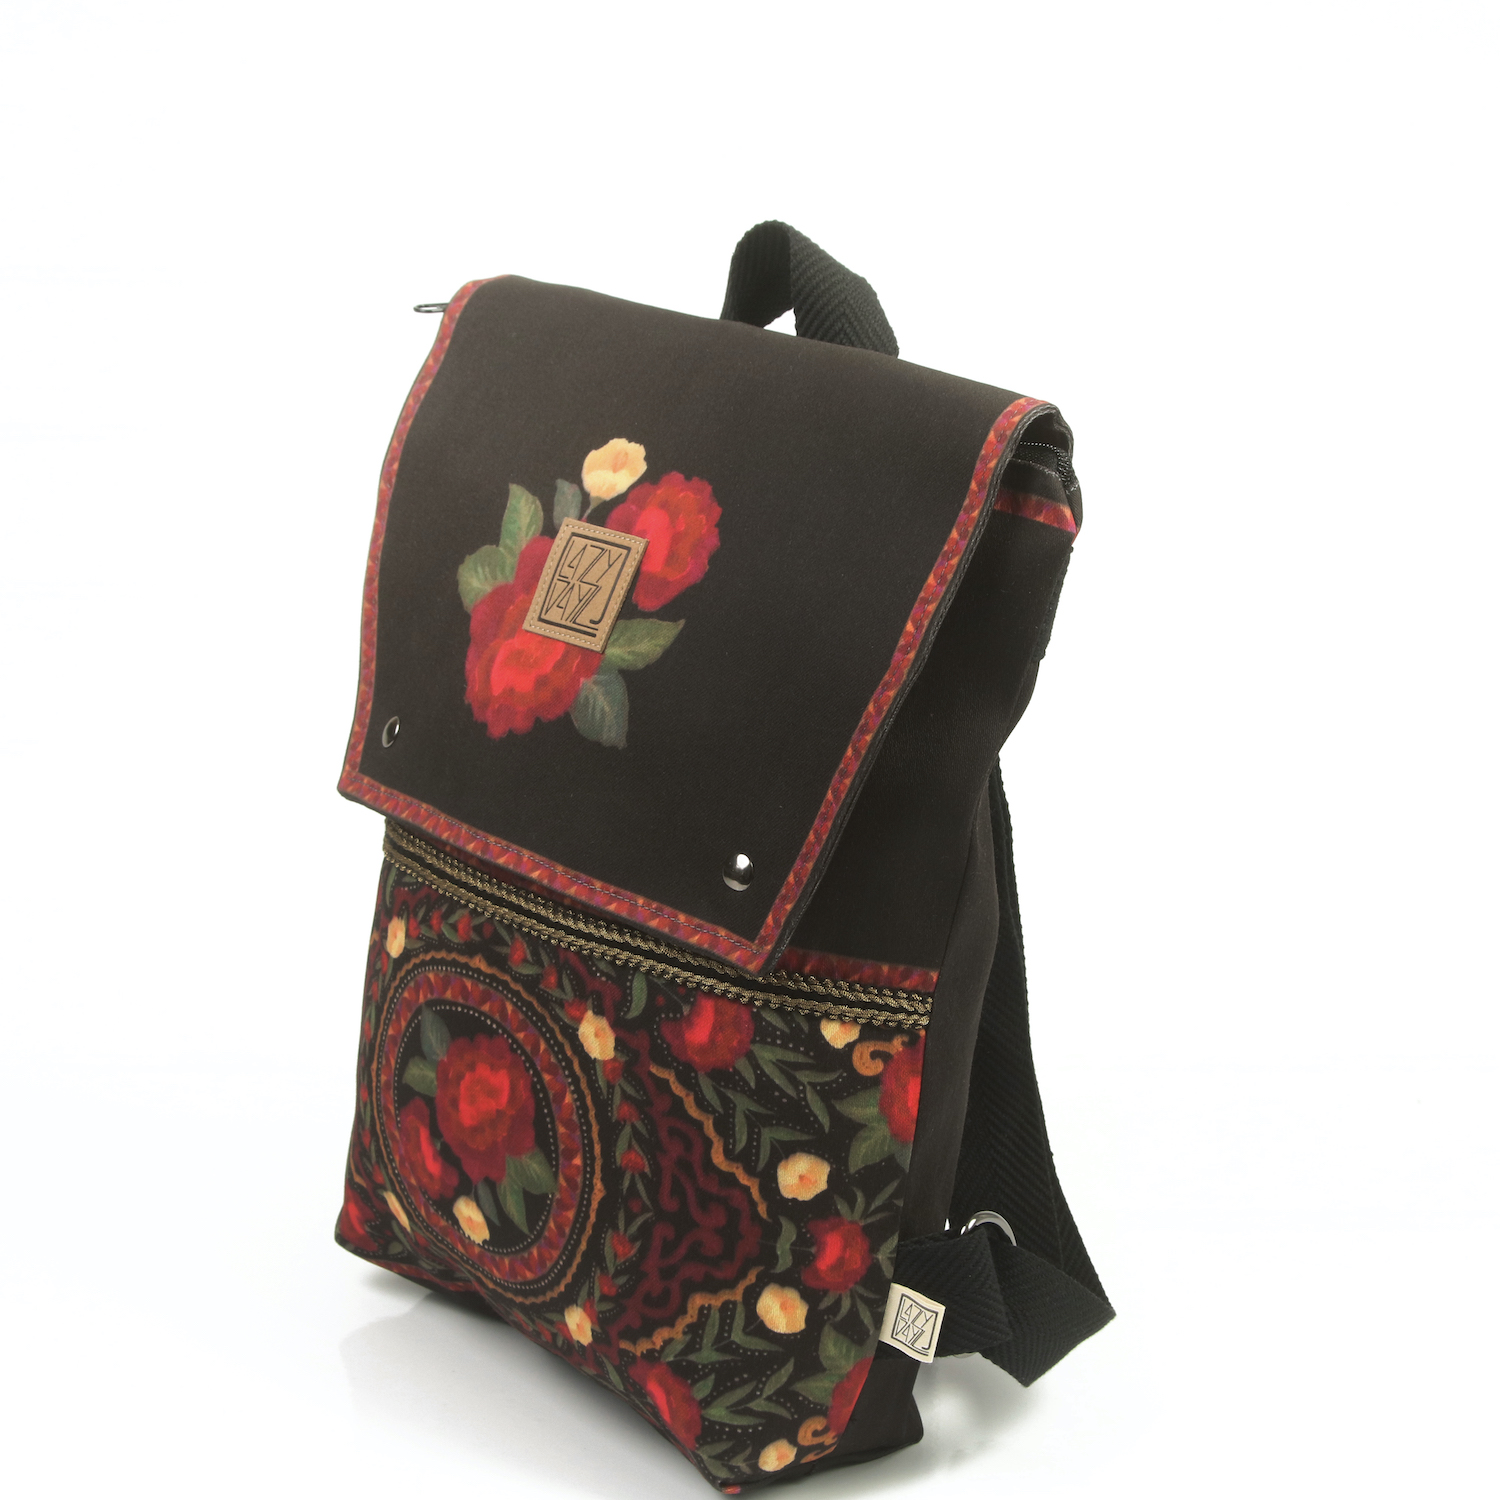 LazyDayz Designs Backpack γυναικείος σάκος πλάτης χειροποίητος bb0703b